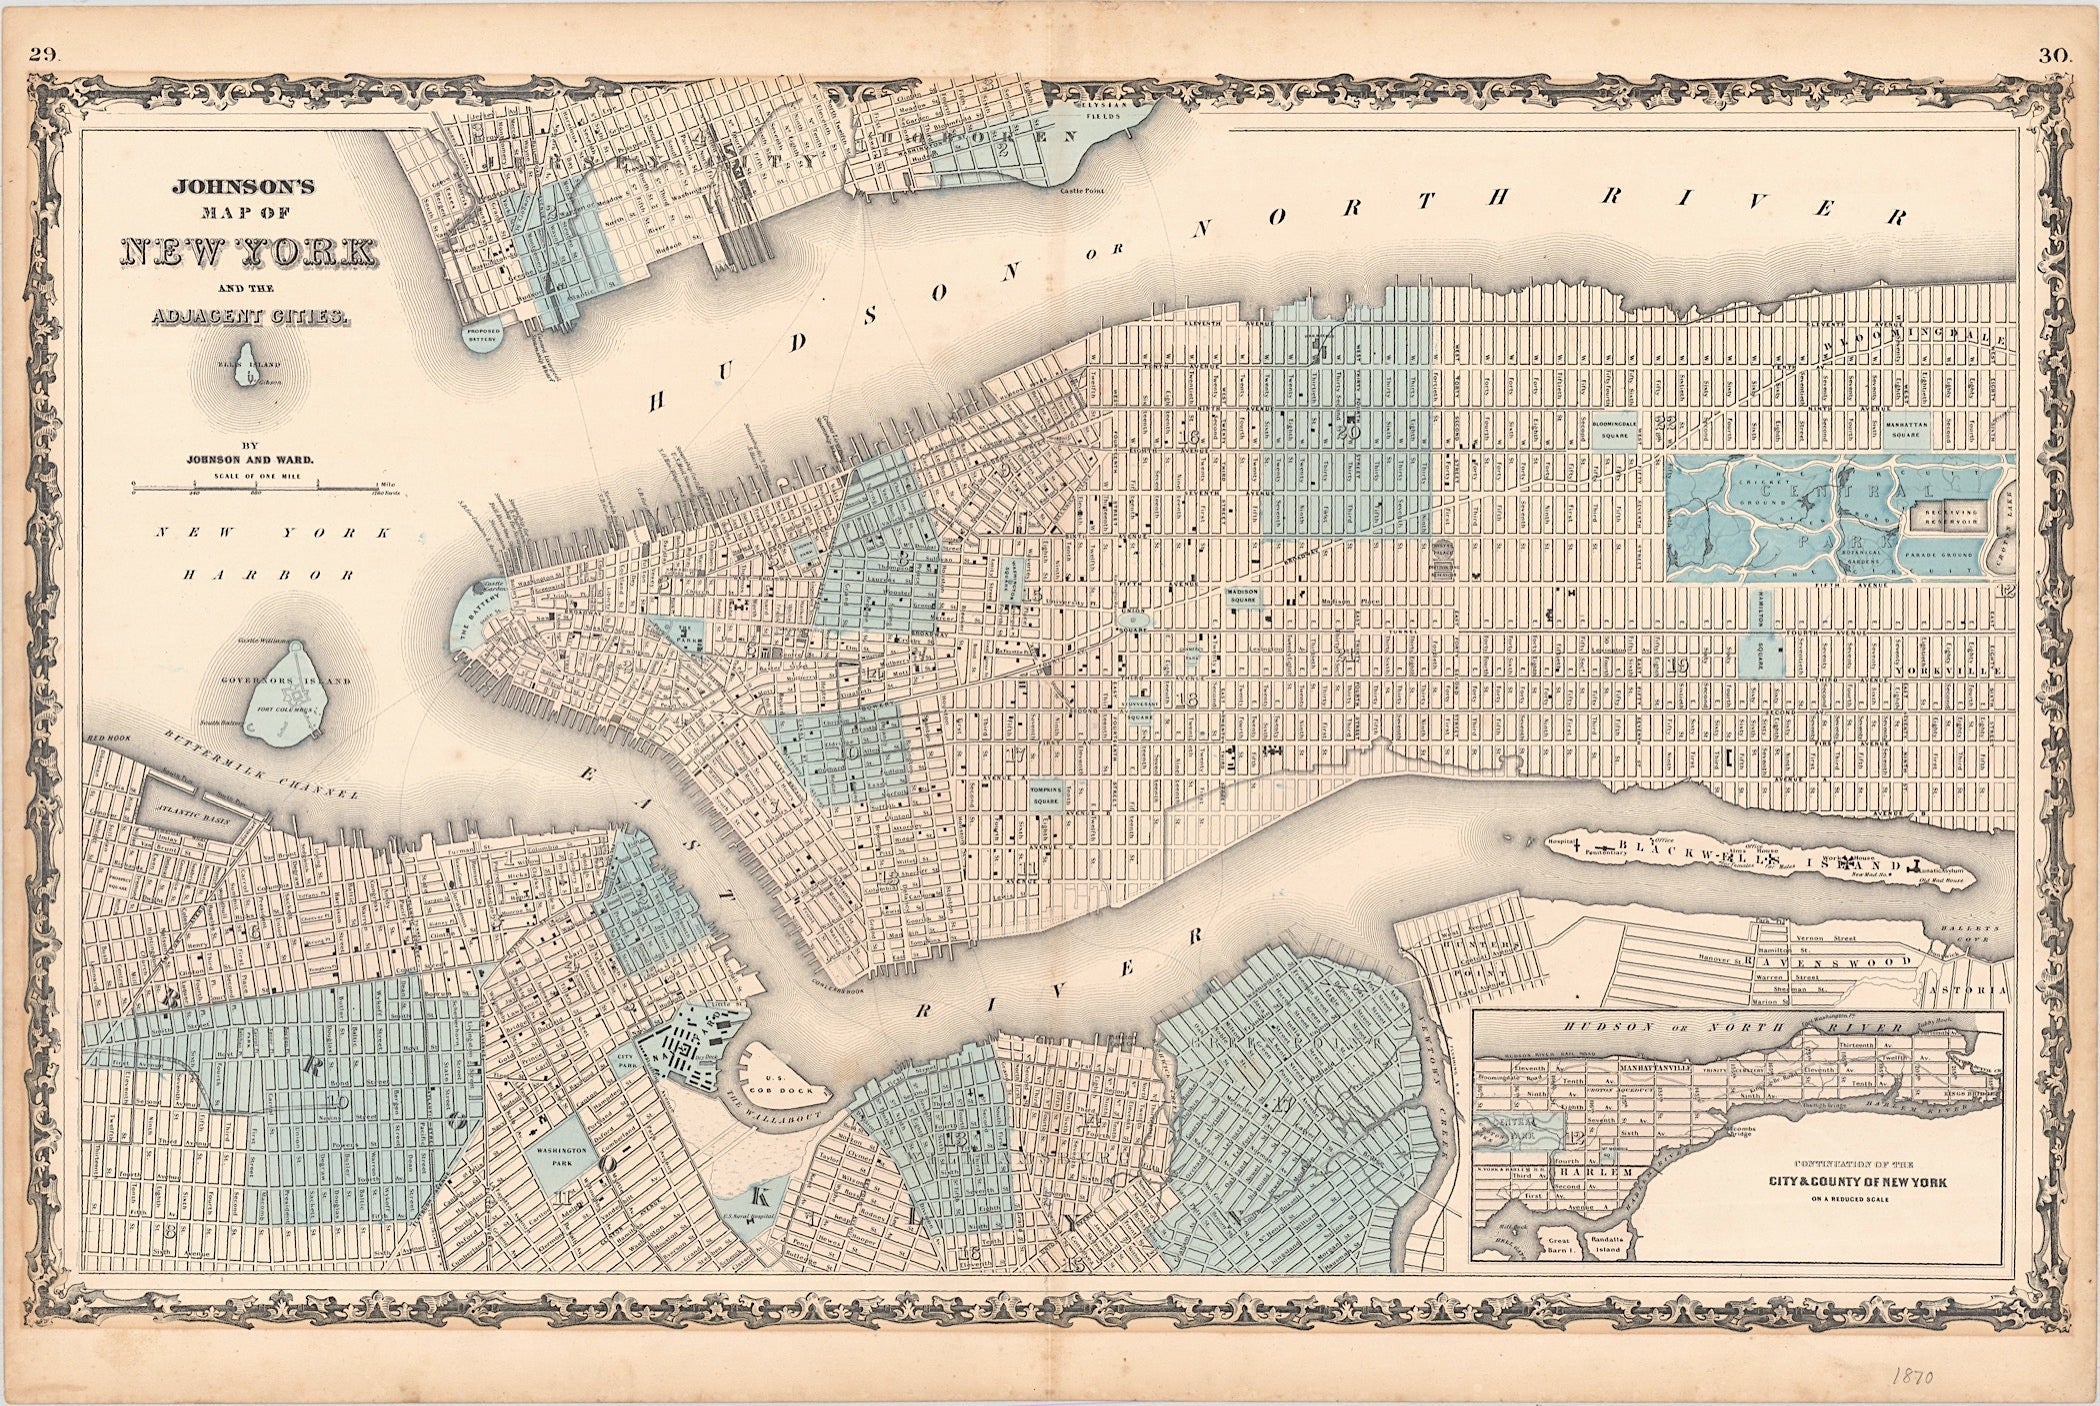 New York um das Jahr 1870 von Alvin Jewitt Johnson & Benjamin P. Ward